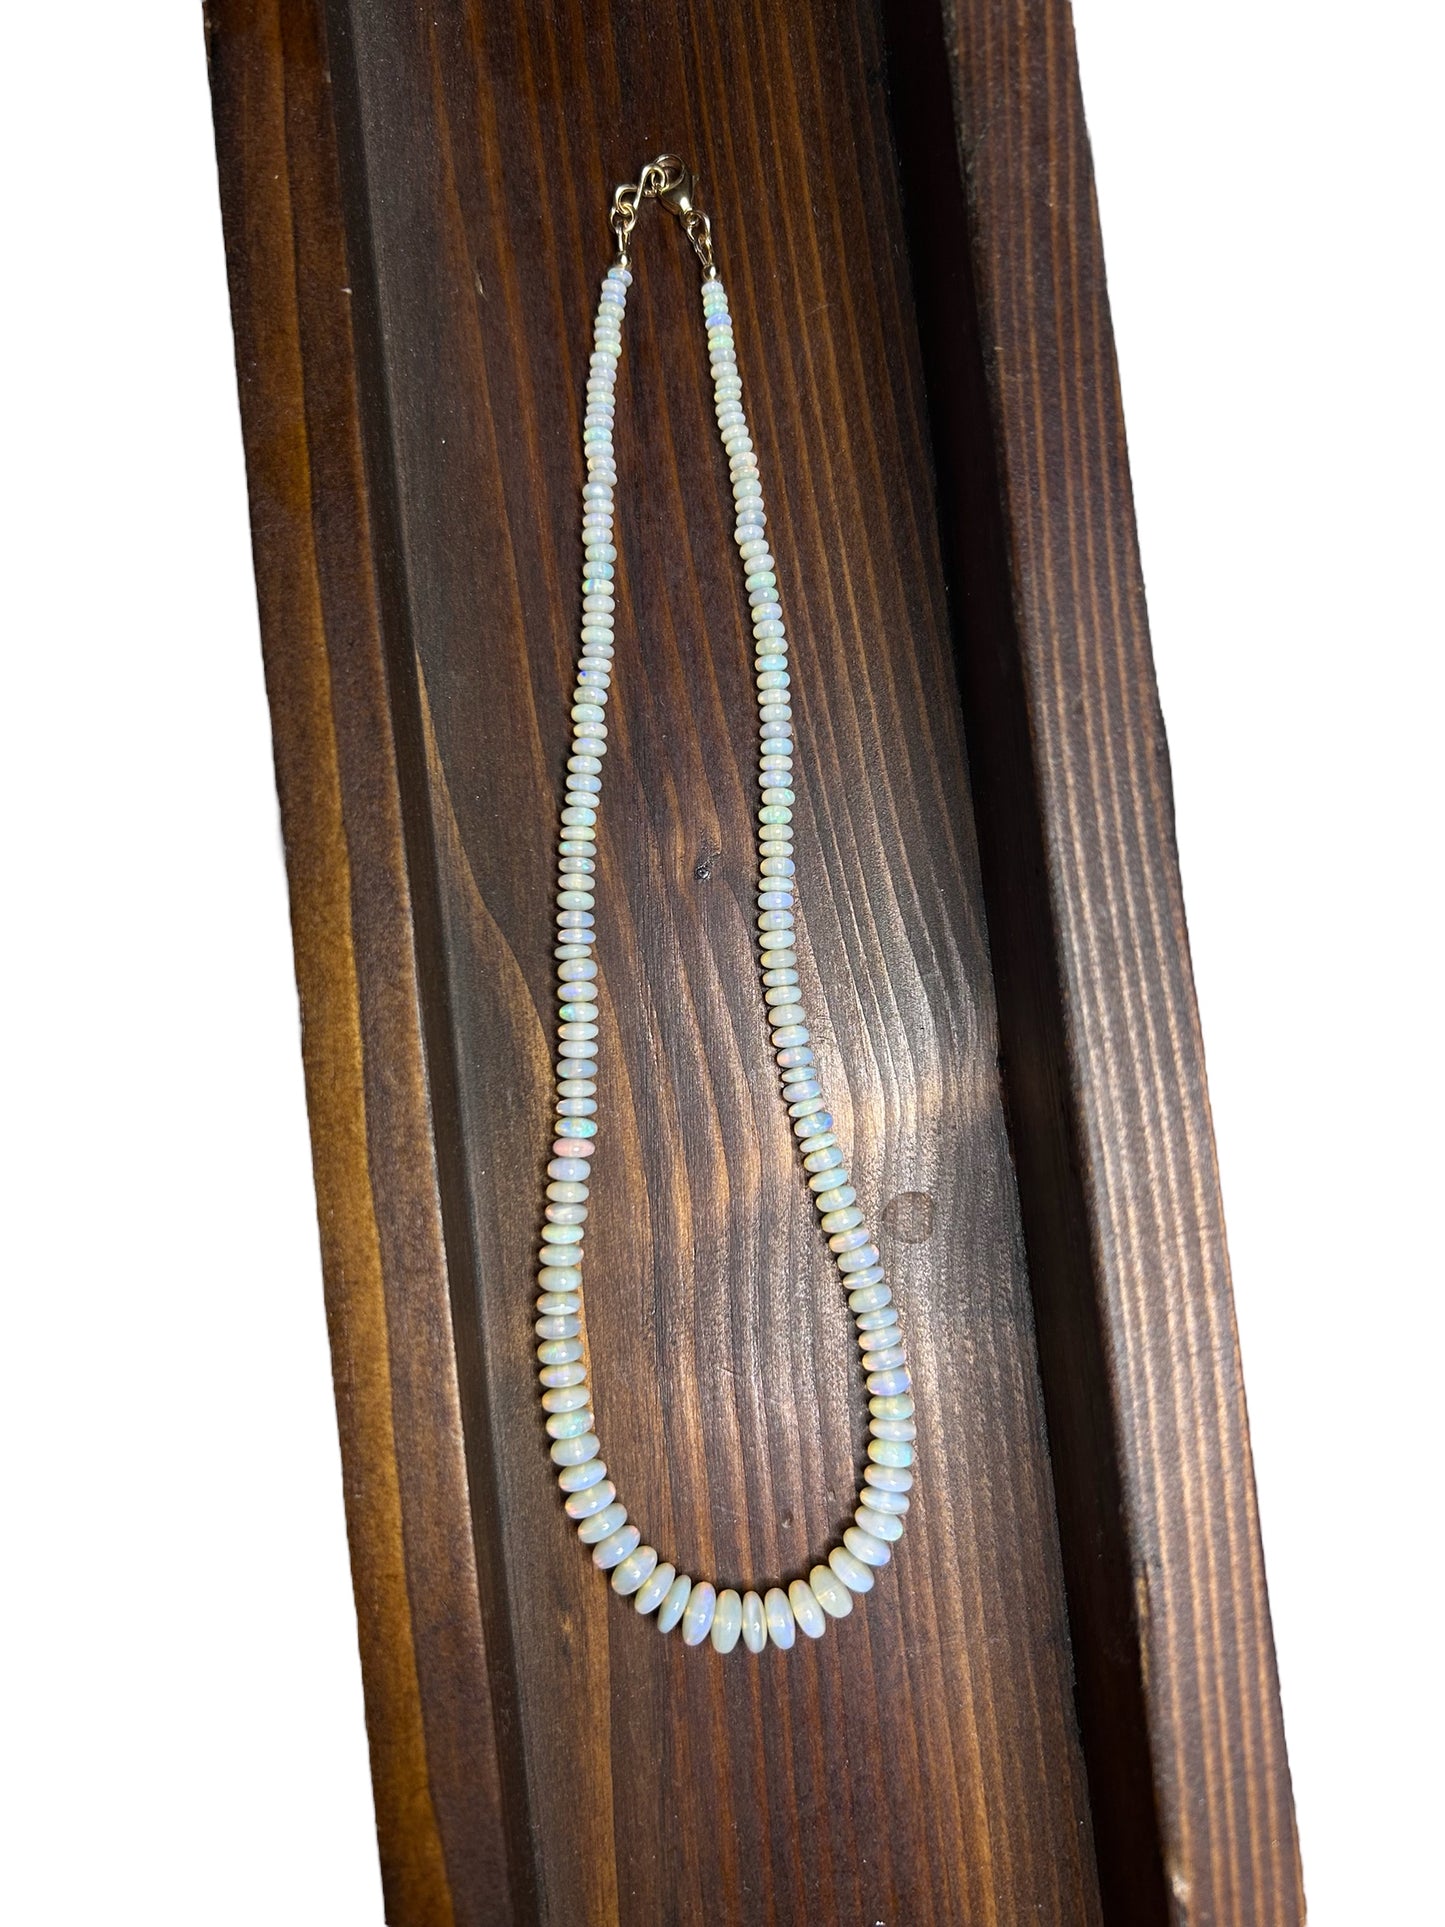 Australian Opal Beaded Necklace